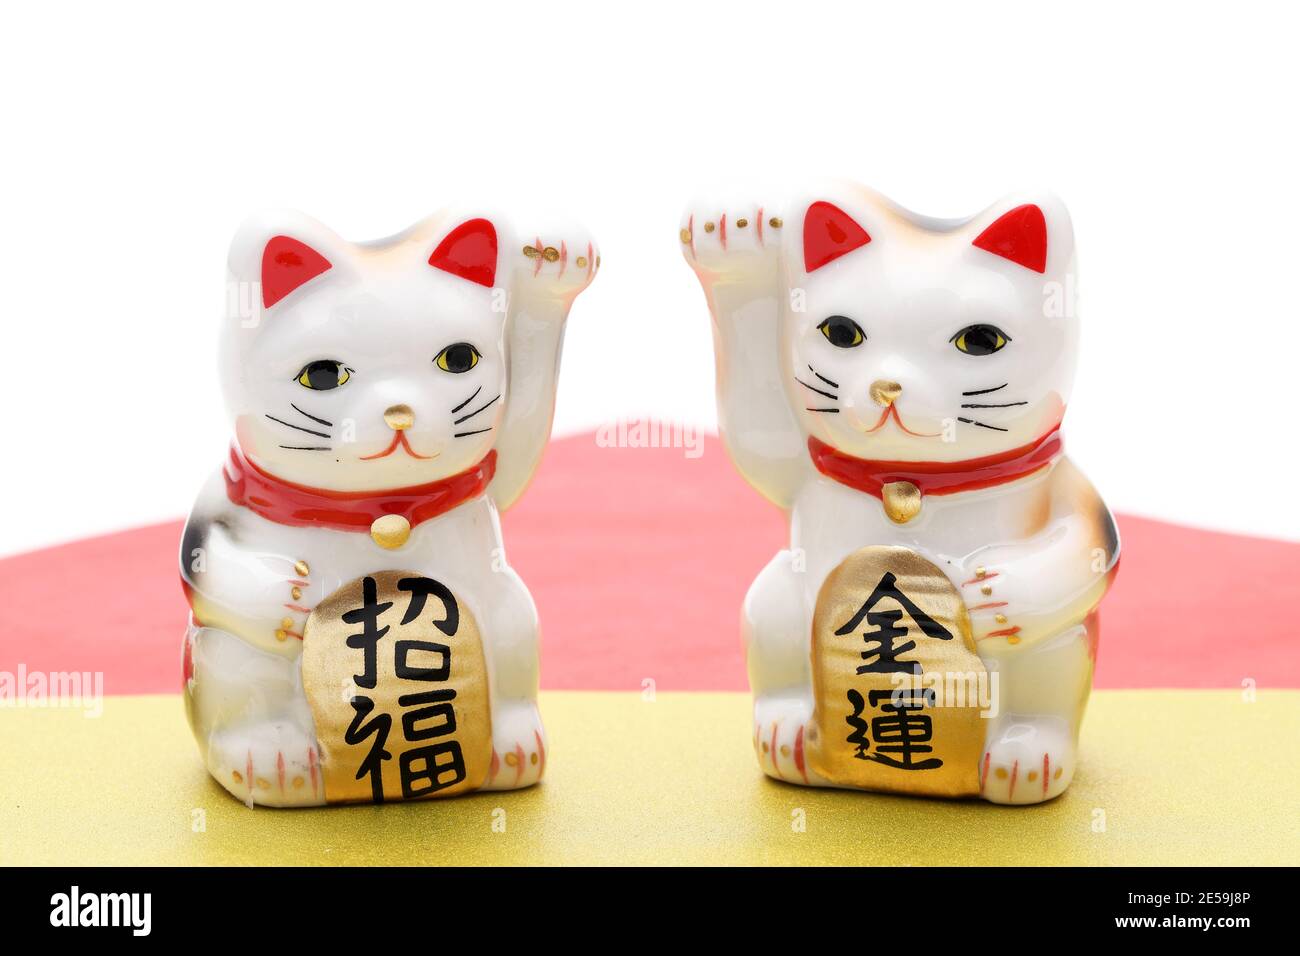 Gatto fortunato giapponese su sfondo bianco, parola giapponese di questa fotografia significa 'benedizione, fortuna economica' Foto Stock